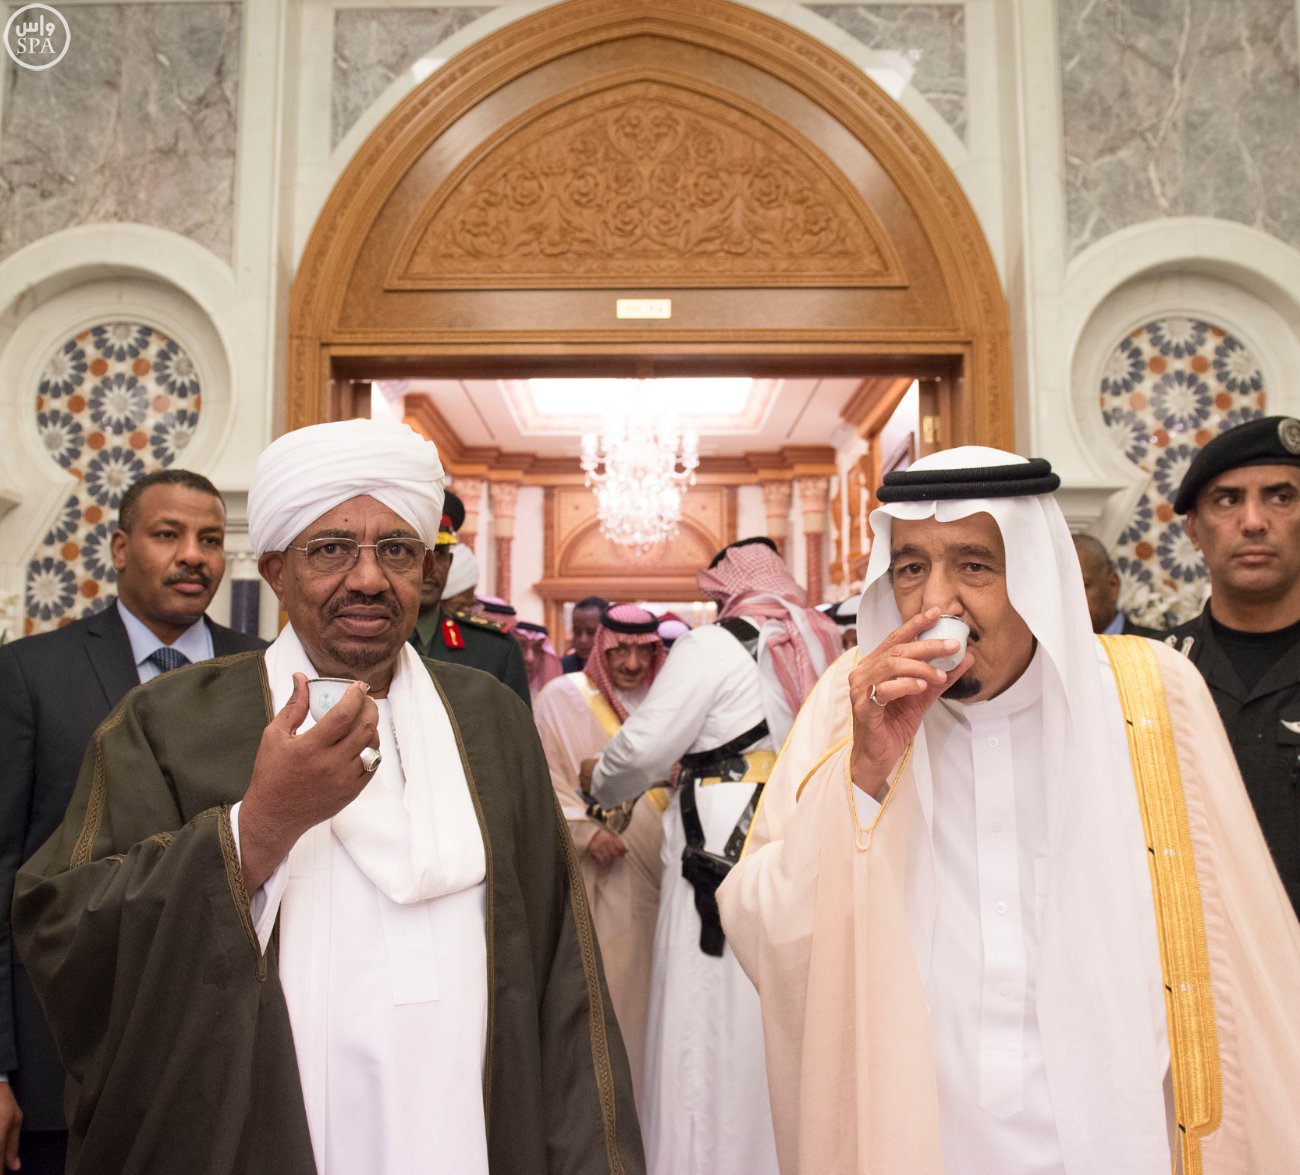 بالصور .. الملك يَسْتقْبل الرئيس السوداني ورئيسي مجلسي الوزراء القطري والأمة الكويتي